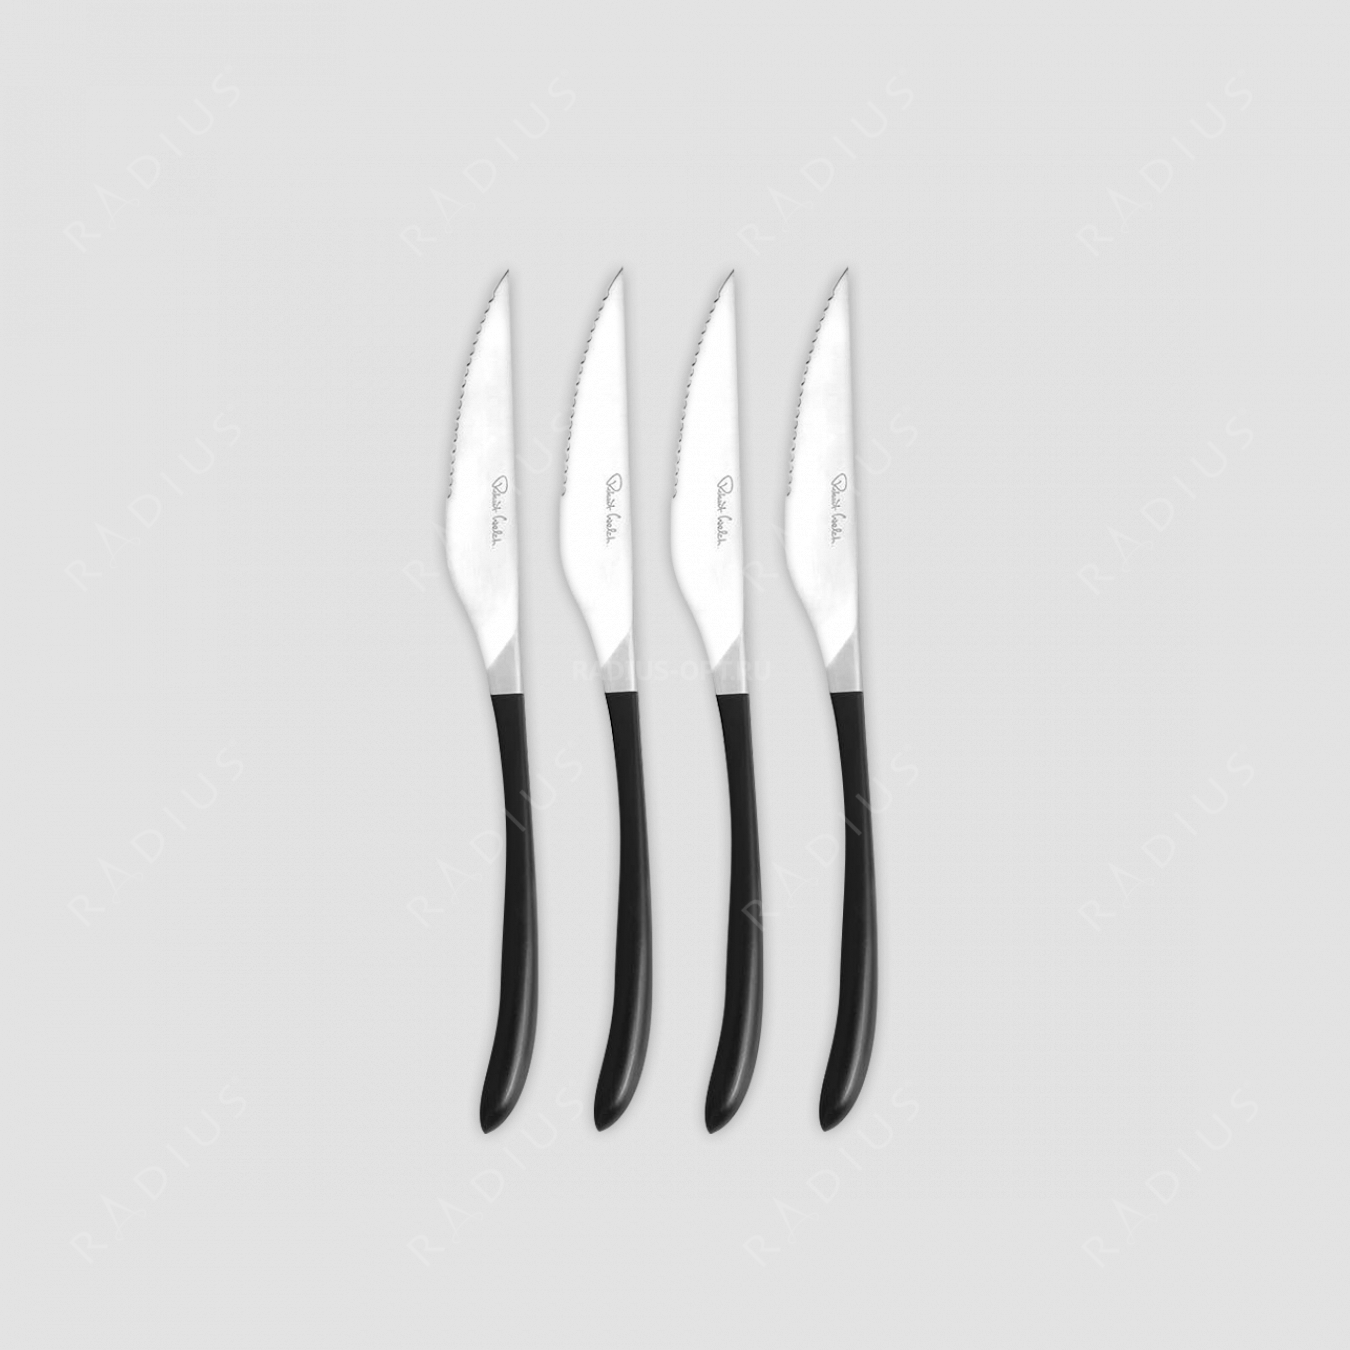 Набор кухонных ножей для стейка 4 штуки, серия Contour Noir, ROBERT WELCH, Великобритания